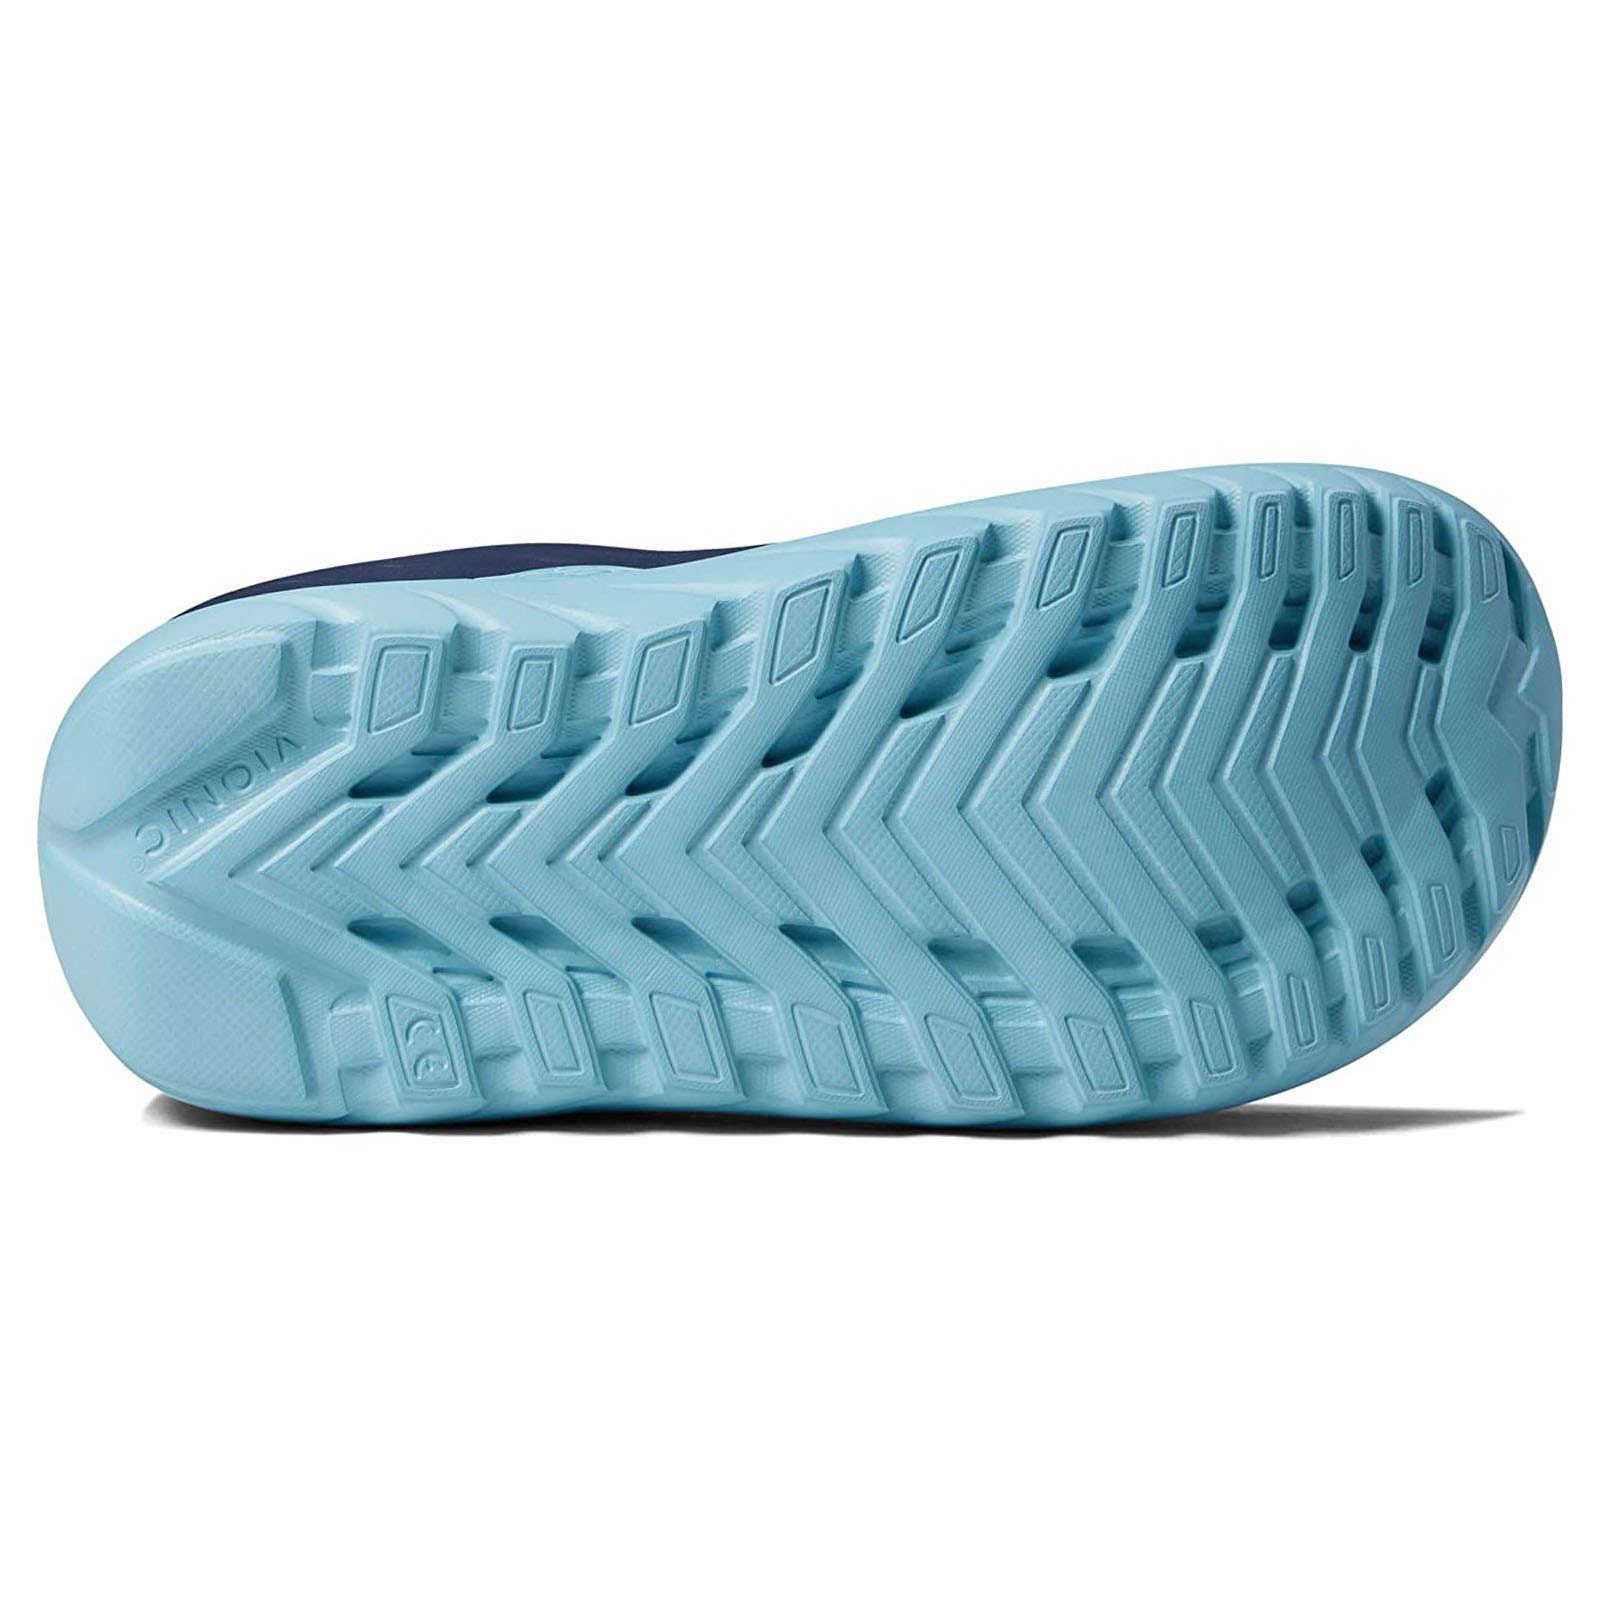 Vionic Restore Leather Womens Sandals#color_navy porcelain blue